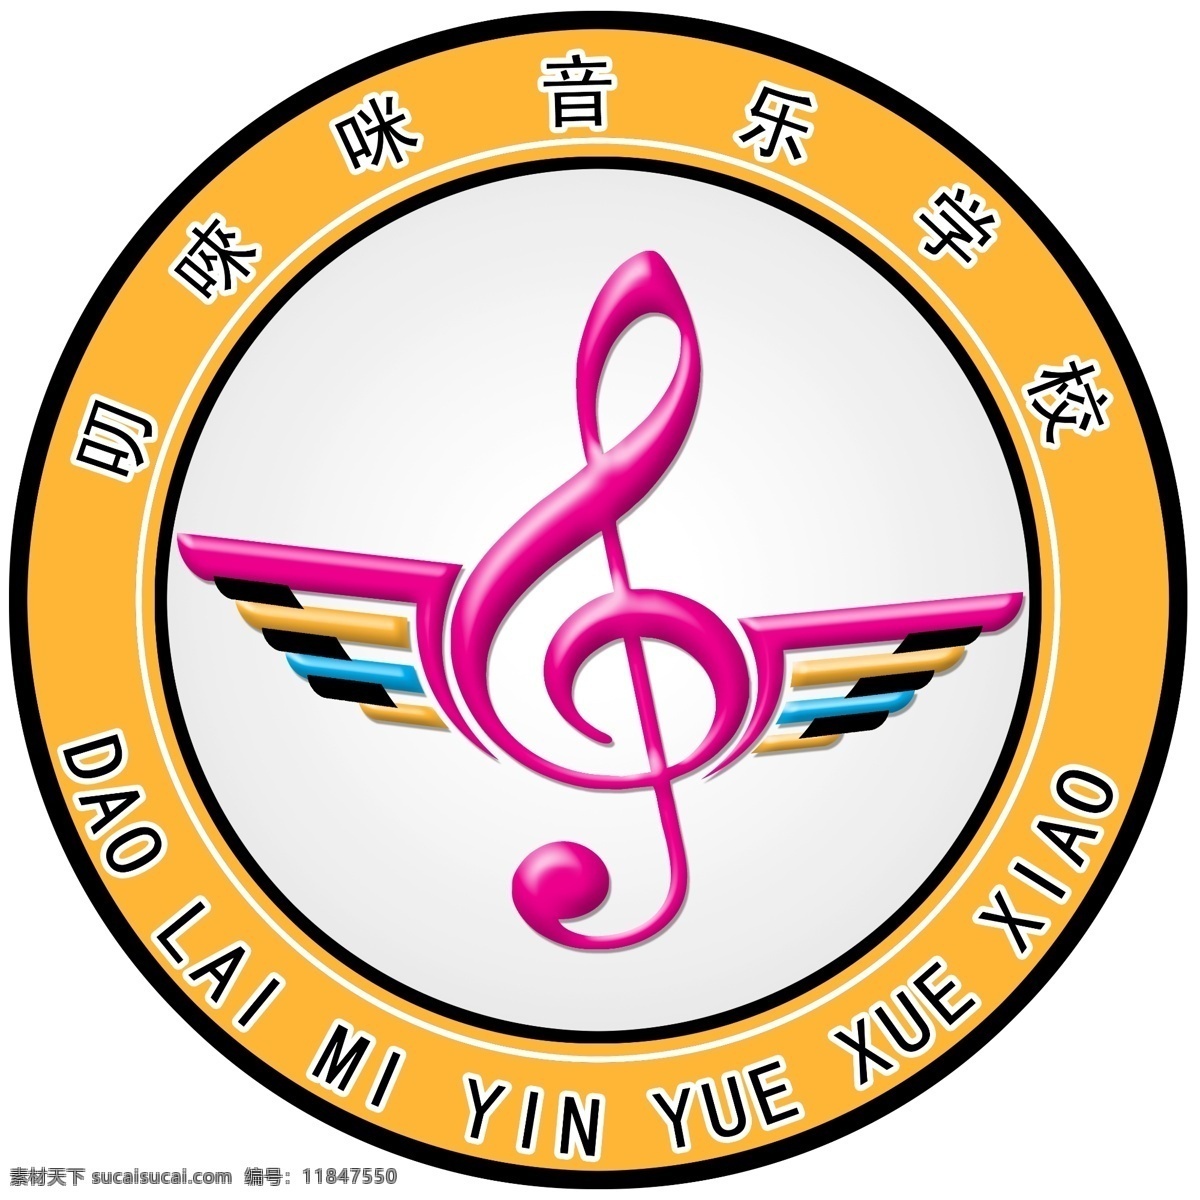 叨米音乐学校 音乐学校标志 音符标志 音符 特色音符 音符学校标志 音乐logo 分层 背景素材